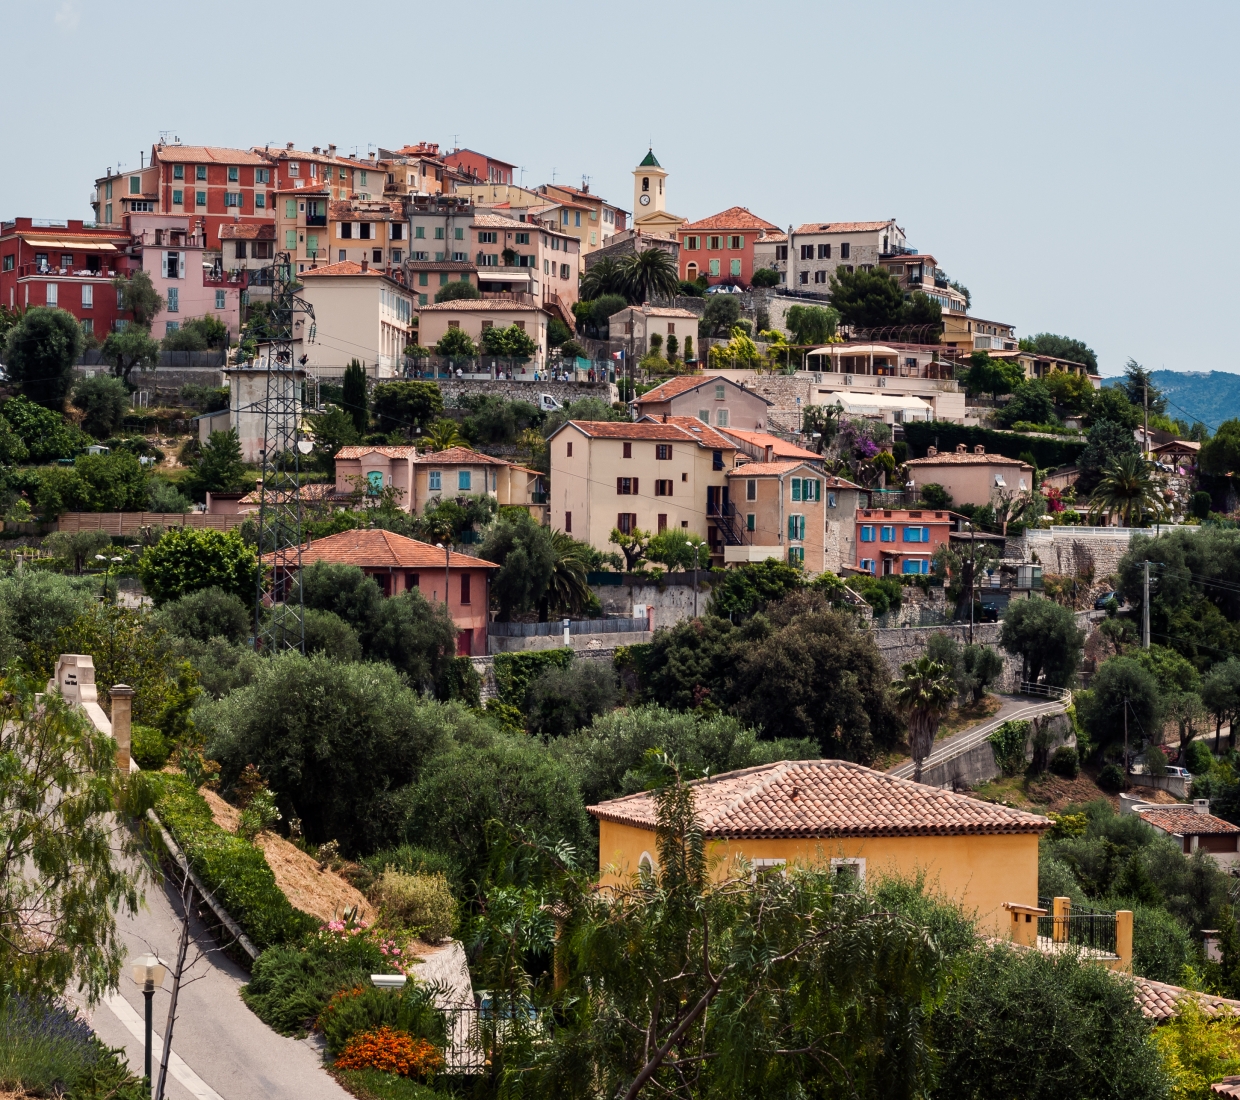 Seleção dos melhores e mais bonitos hotéis e casas de férias em Alpes Maritimes Côte d’Azur